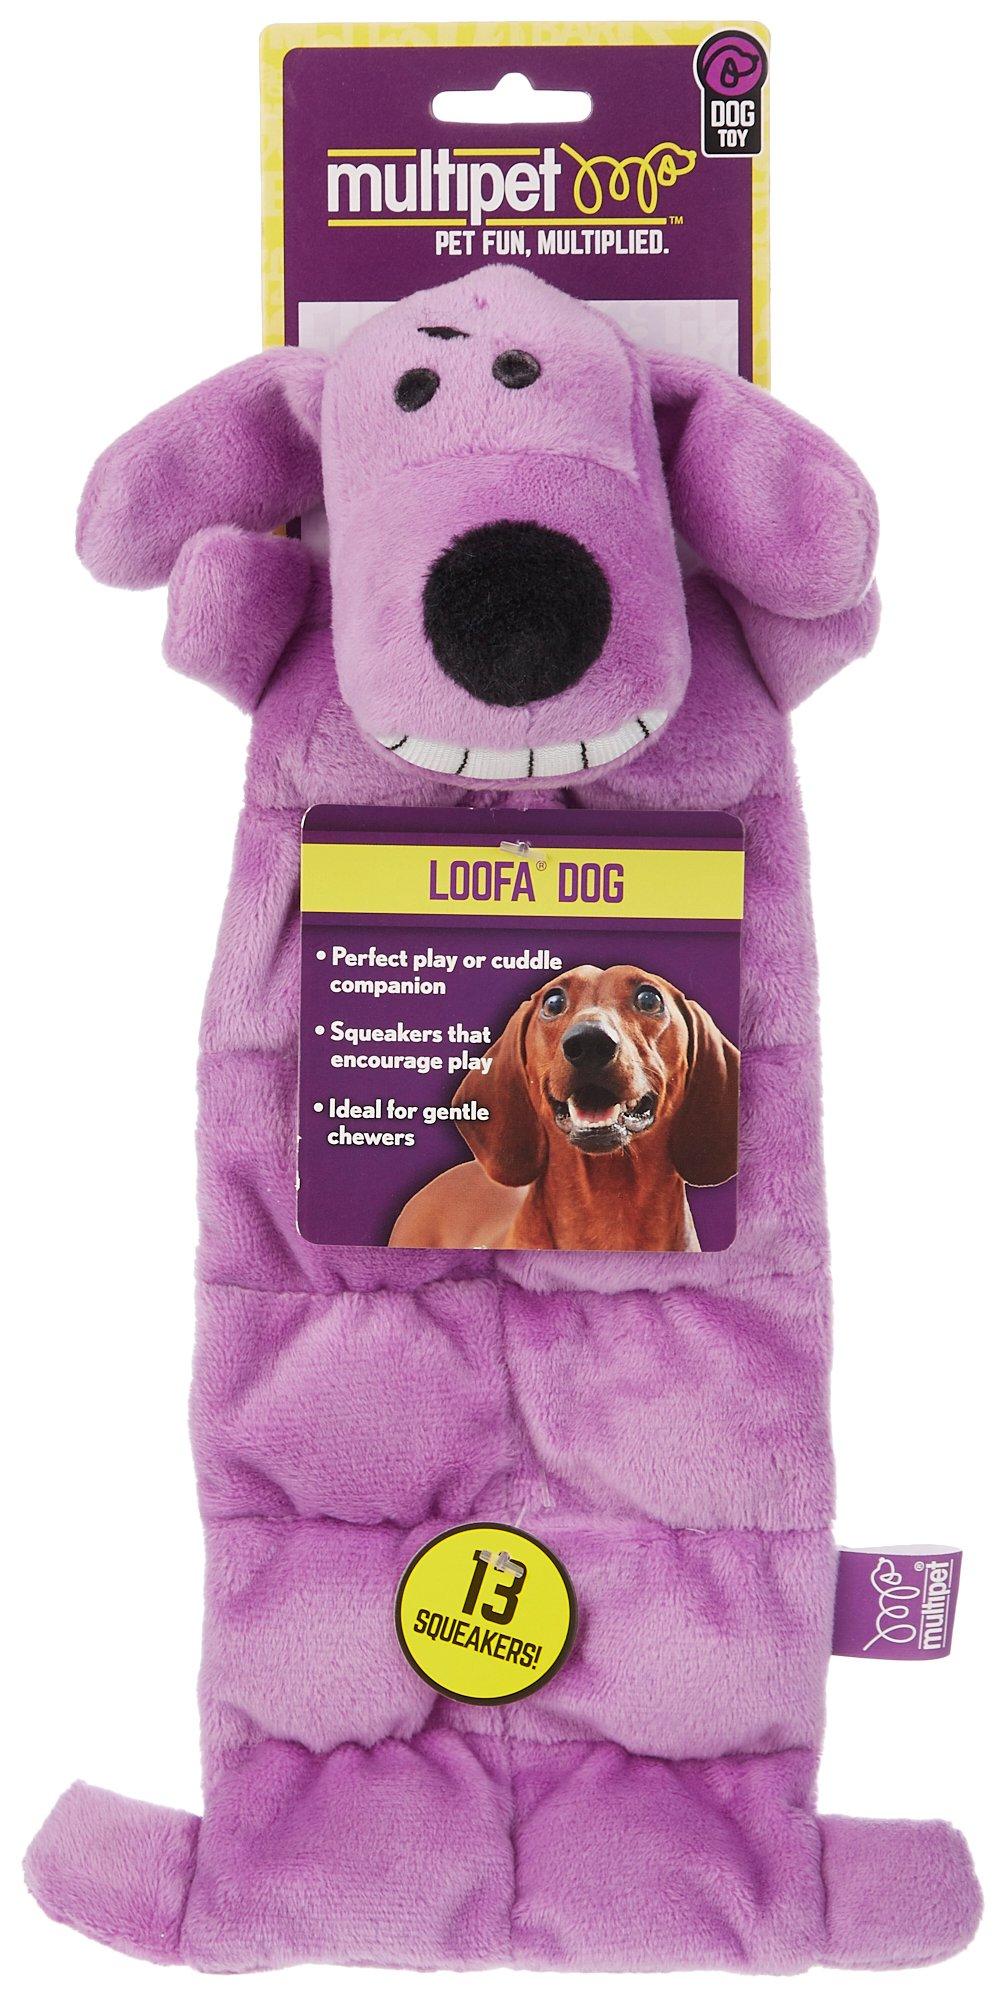 Loofa Dog 13 Squeaker Toy